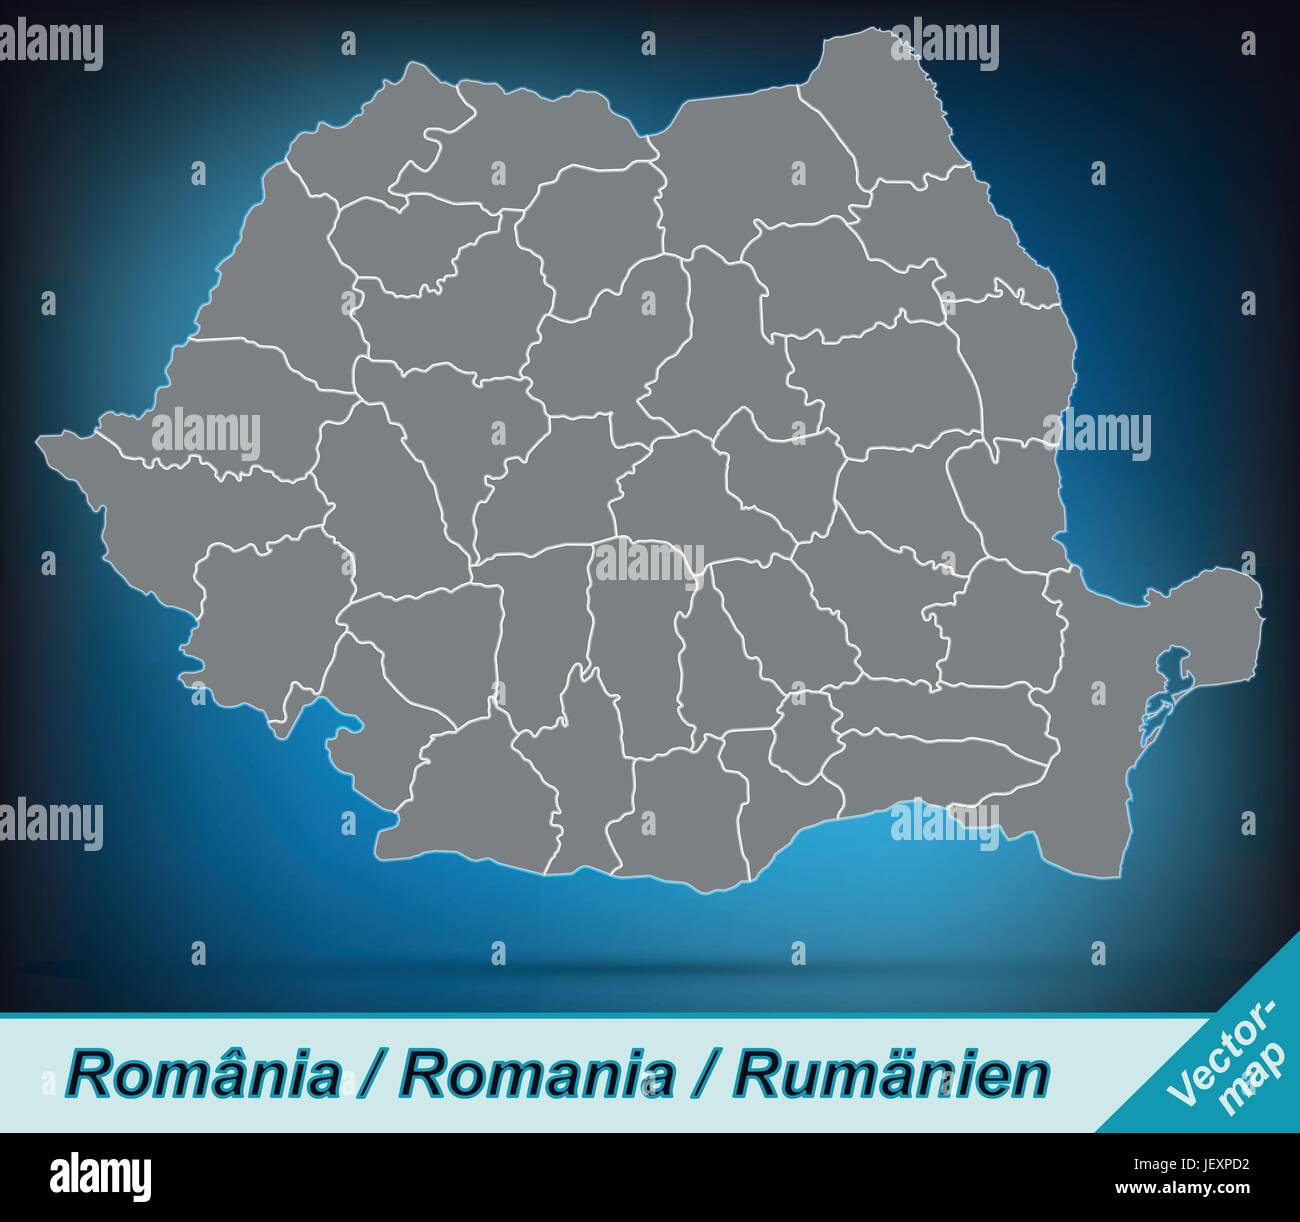 Mappa di confine della Romania con bordi in grigio brillante Illustrazione Vettoriale